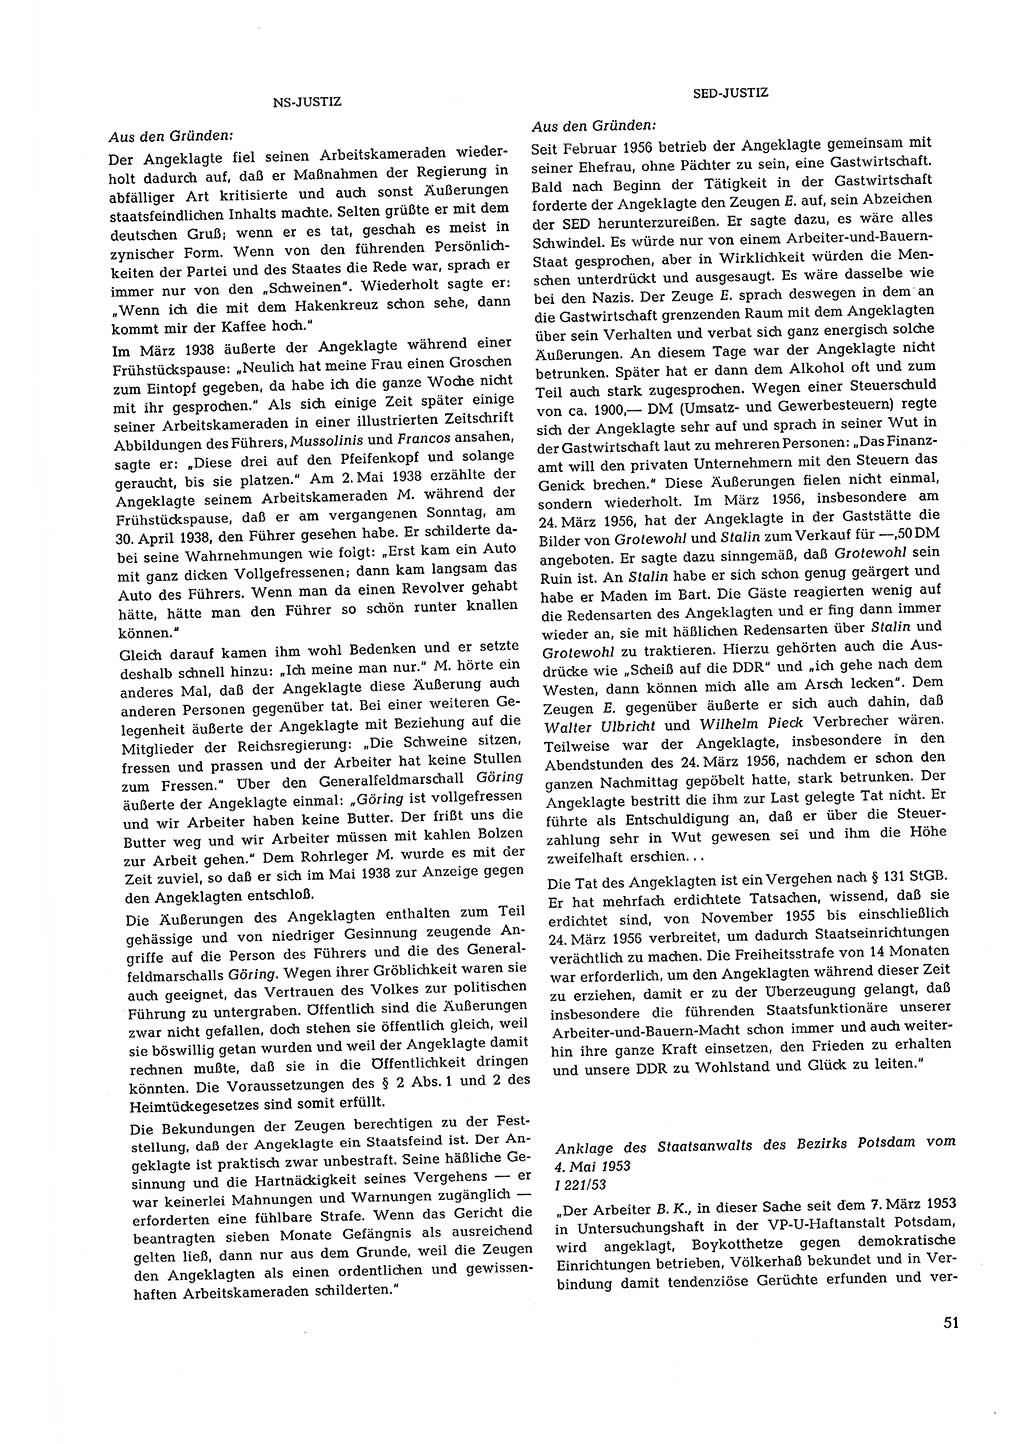 Partei-Justiz, Dokumentation über den nationalsozialistischen und kommunistischen Rechtsmißbrauch in Deutschland 1933-1963, Seite 51 (Part.-Just. Dtl. natsoz. komm. 1933-1963, S. 51)